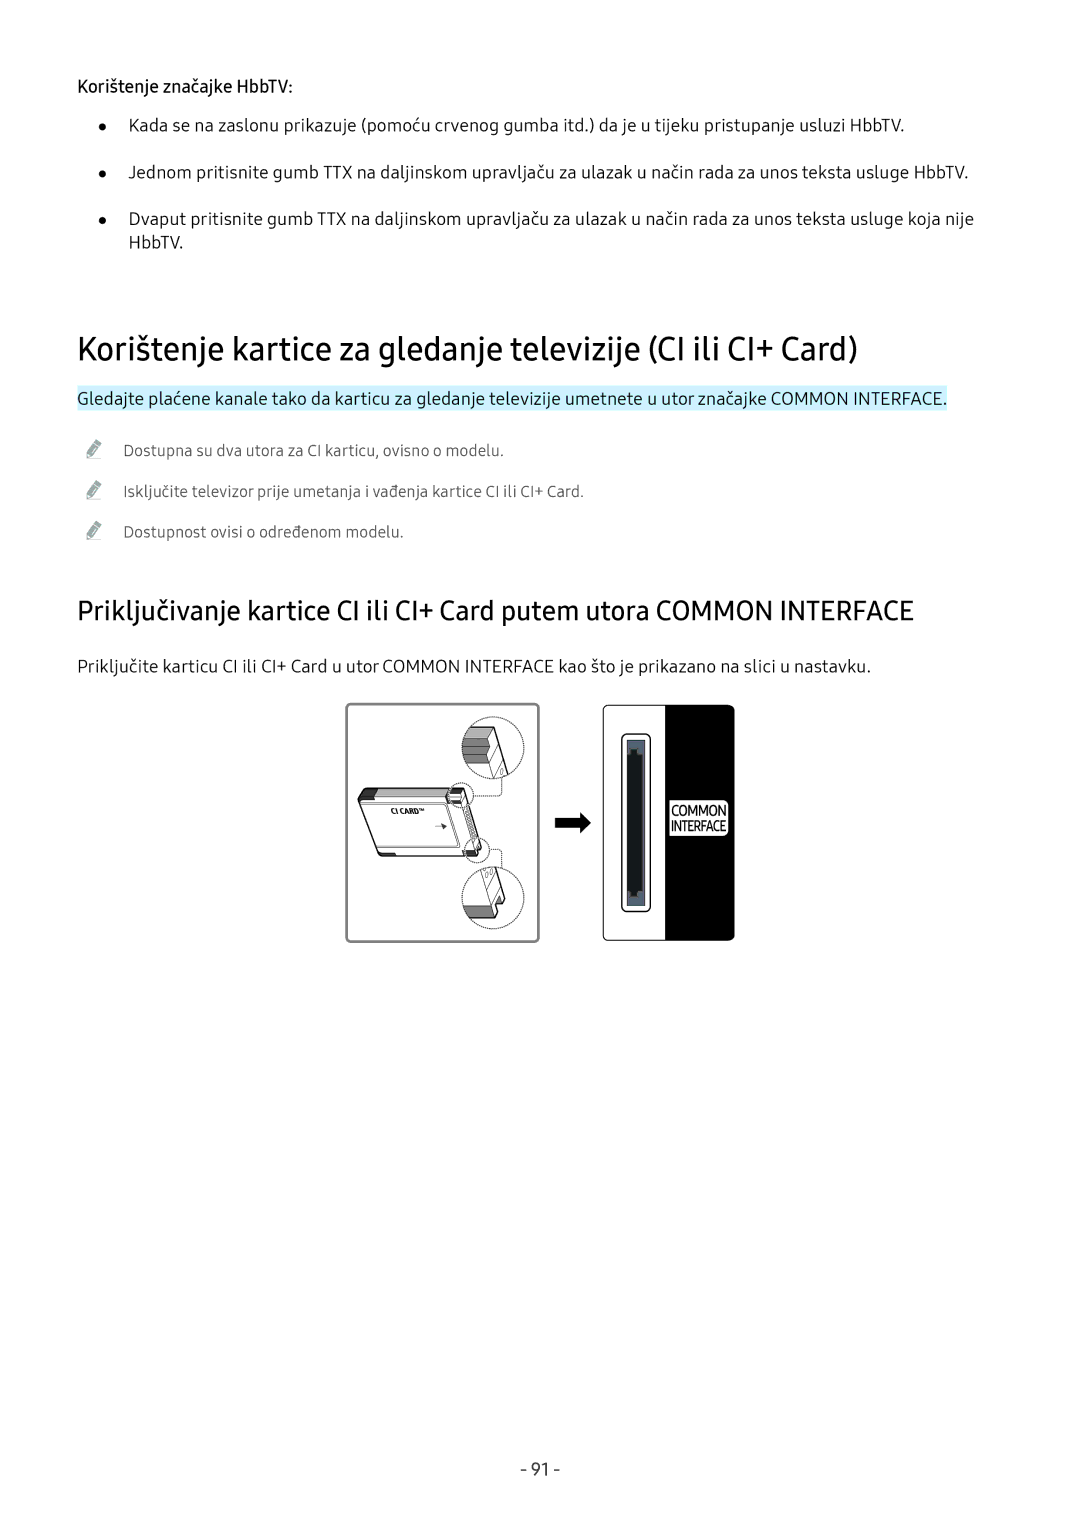 Samsung UE75MU8002TXXH, QE55Q7CAMTXXH Korištenje kartice za gledanje televizije CI ili CI+ Card, Korištenje značajke HbbTV 